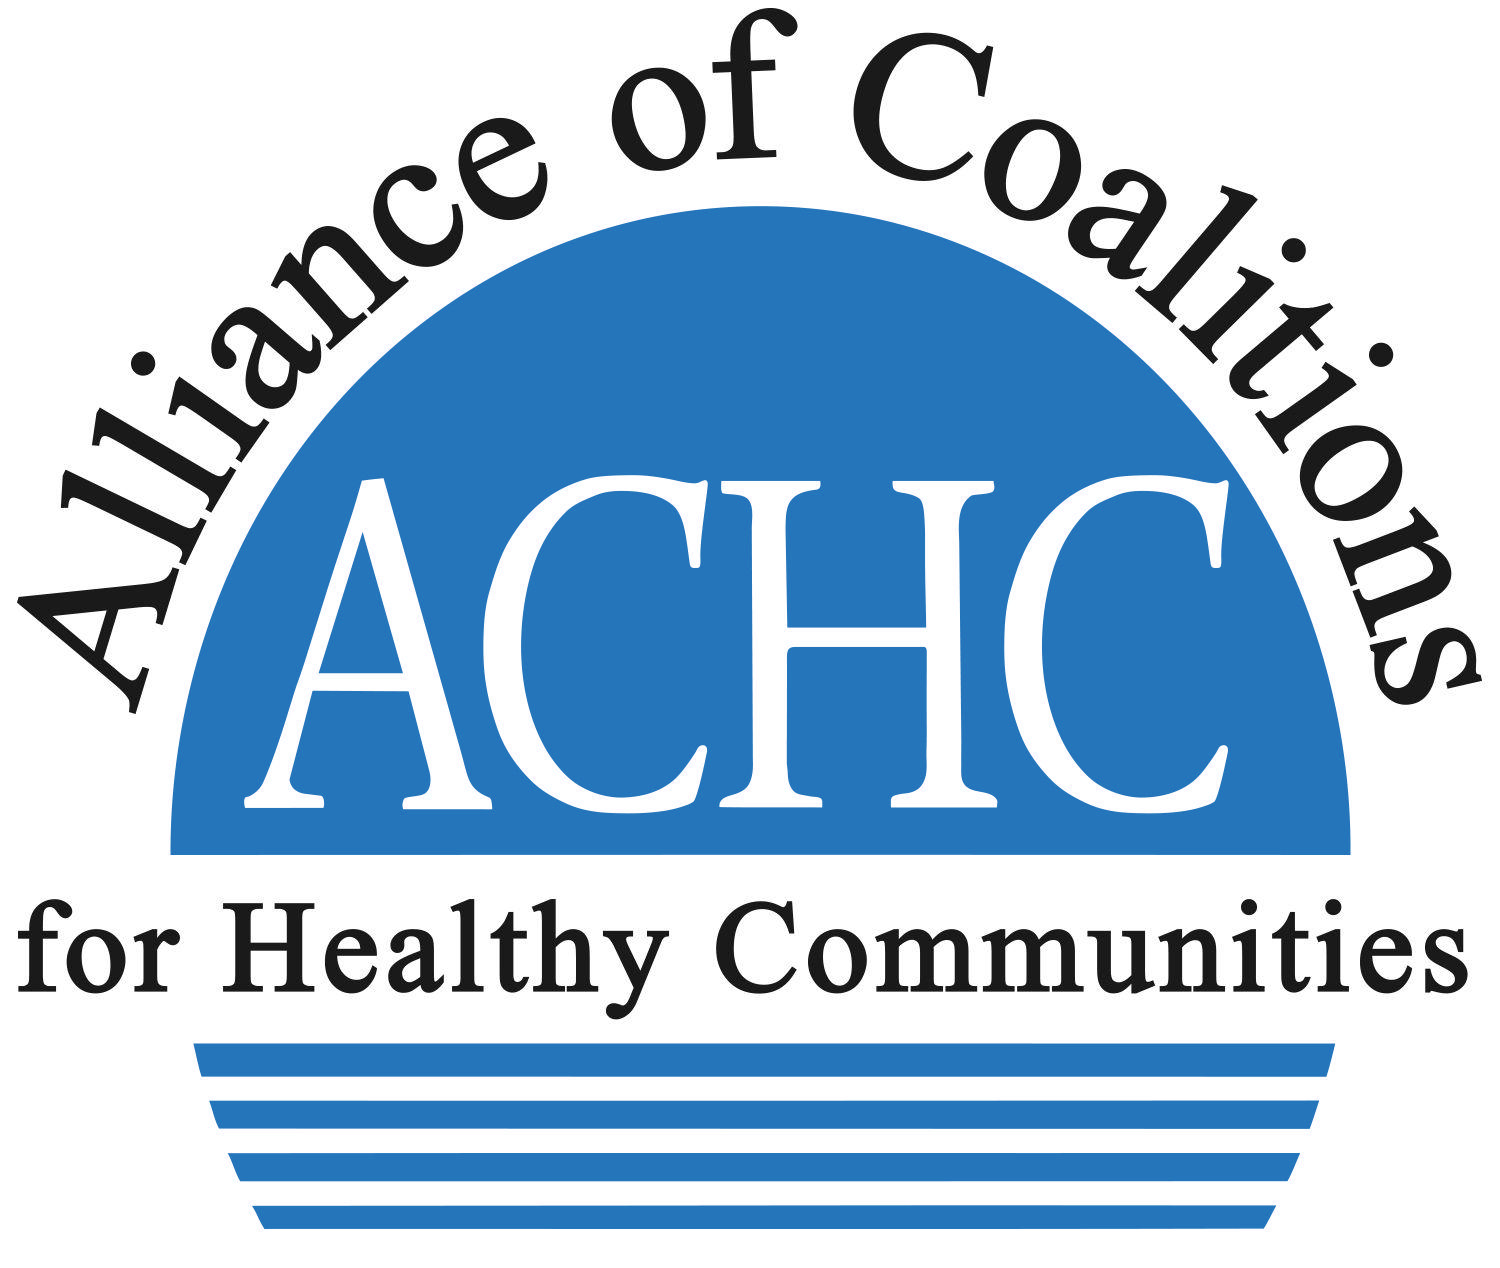 Achc Logo - ACHC